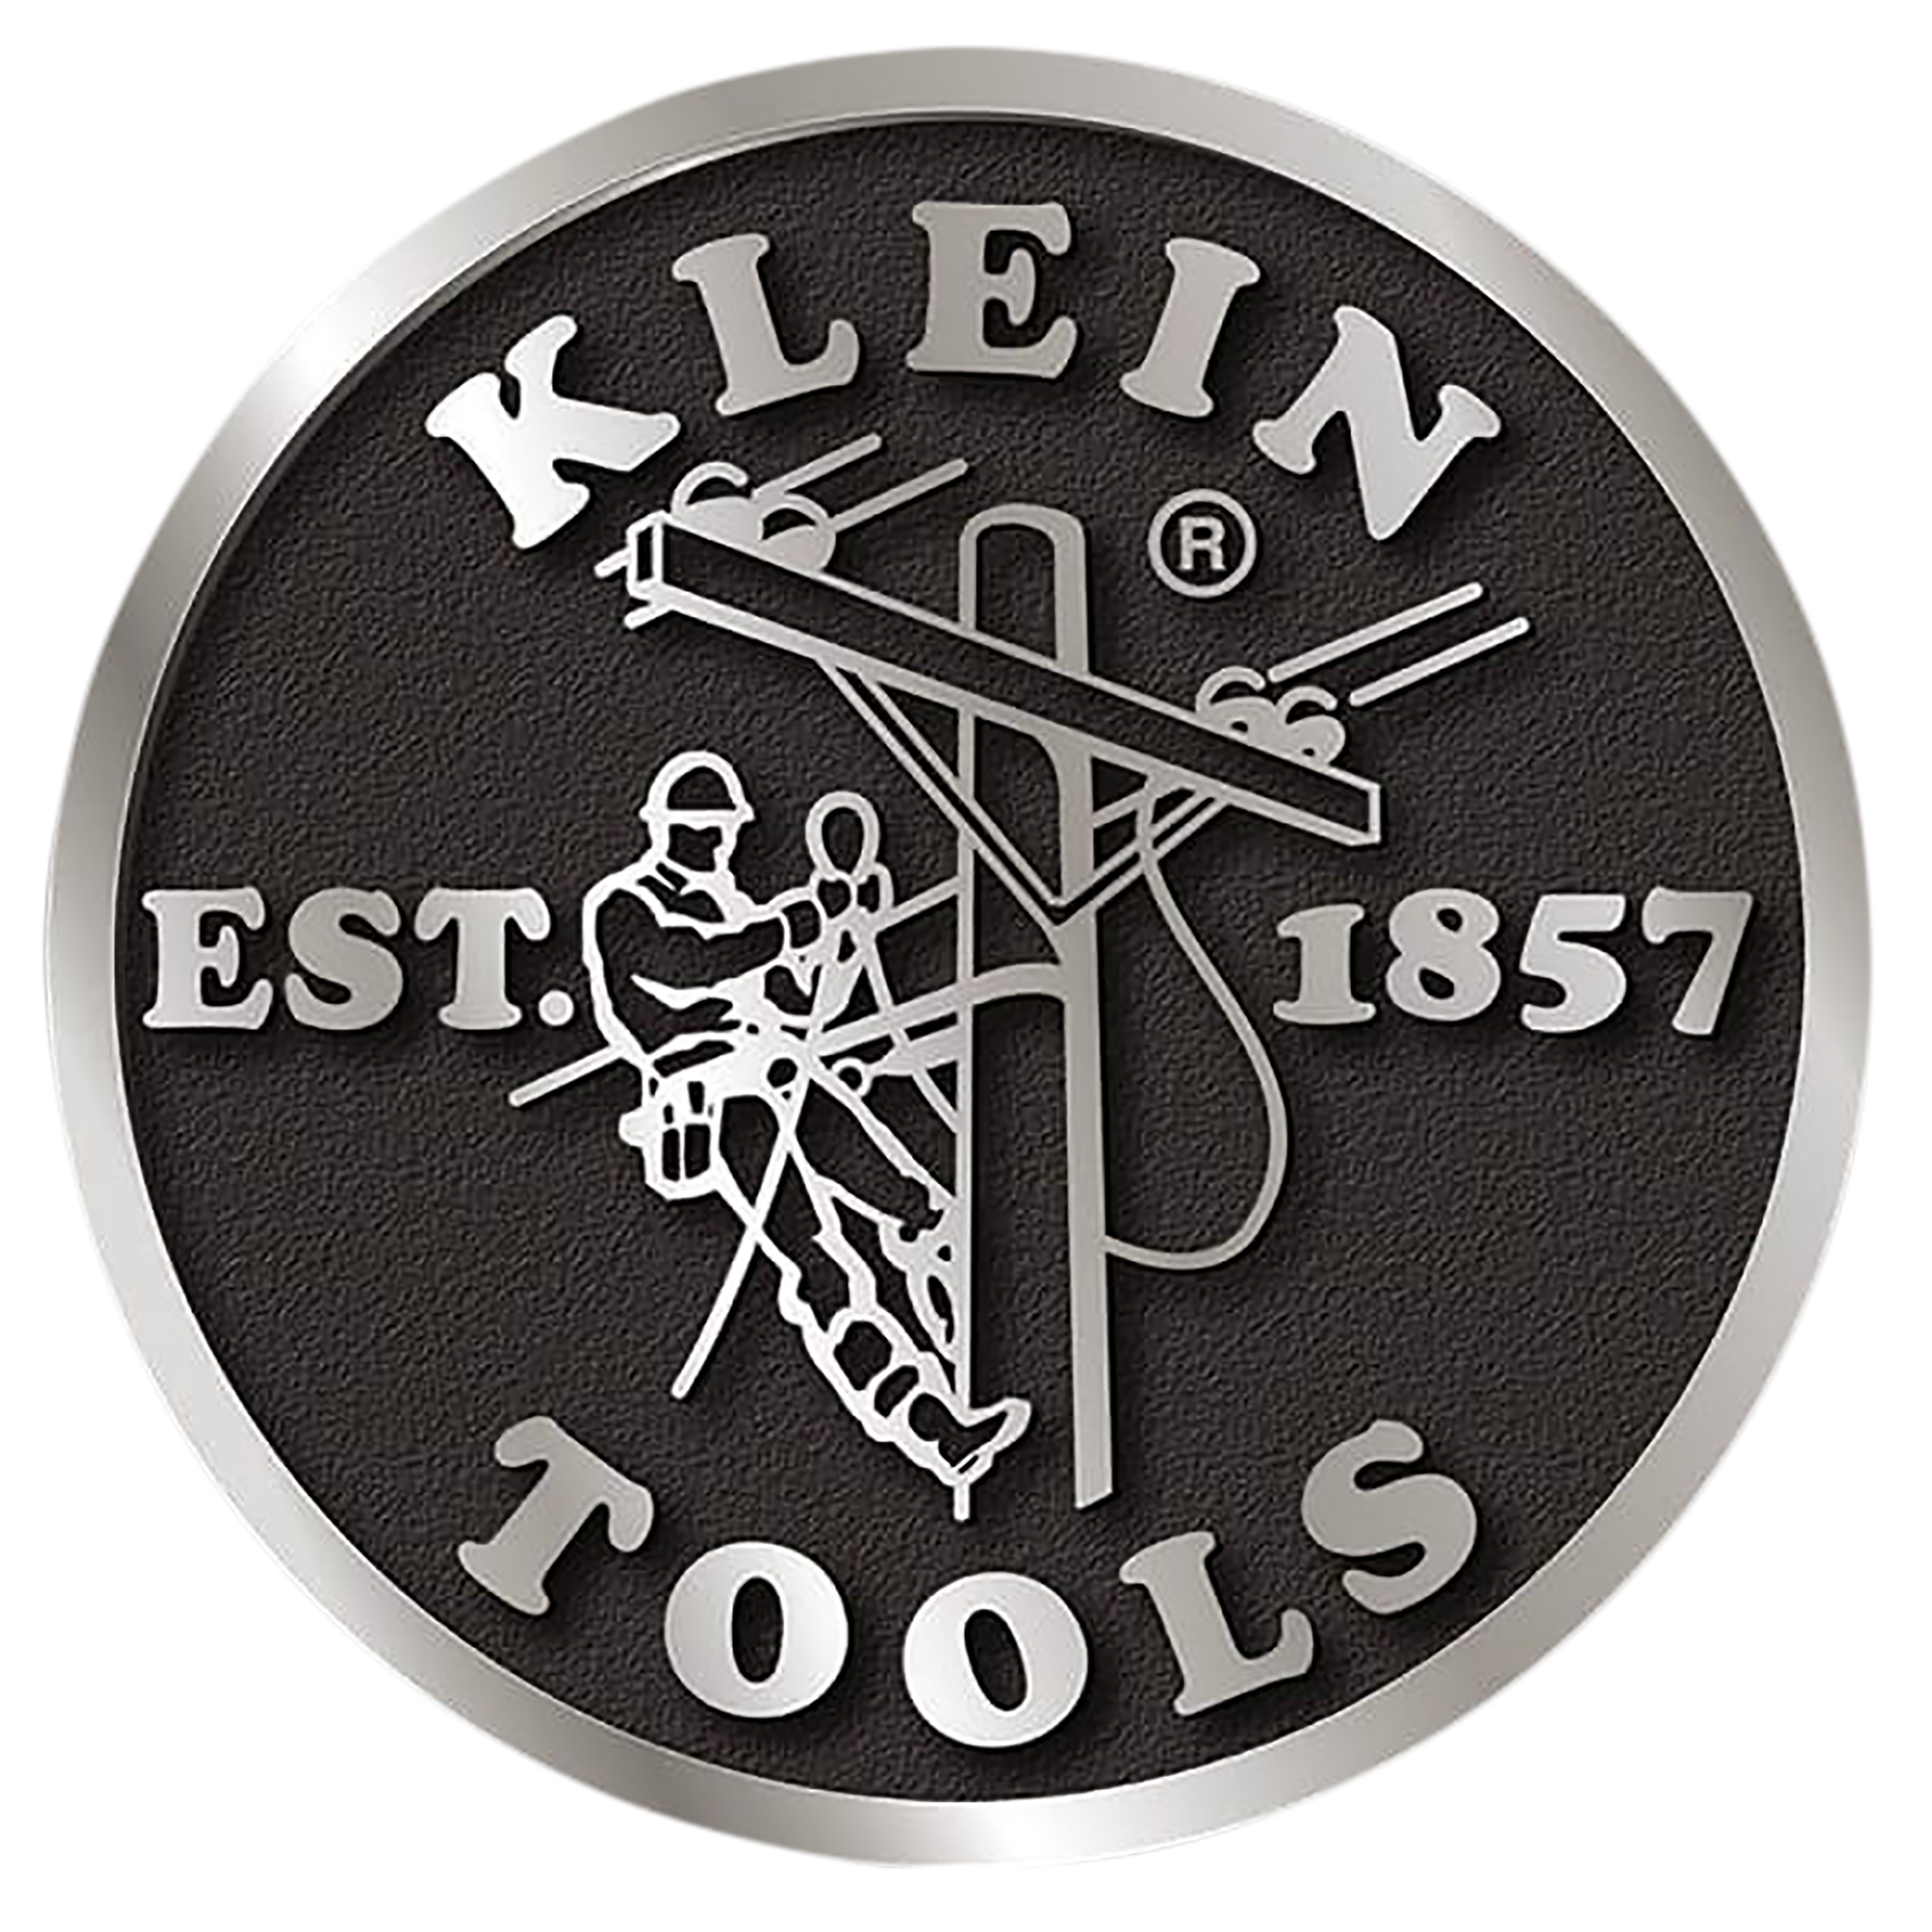 Kleintools logo 12062020 v120200616 16057 2ayphe